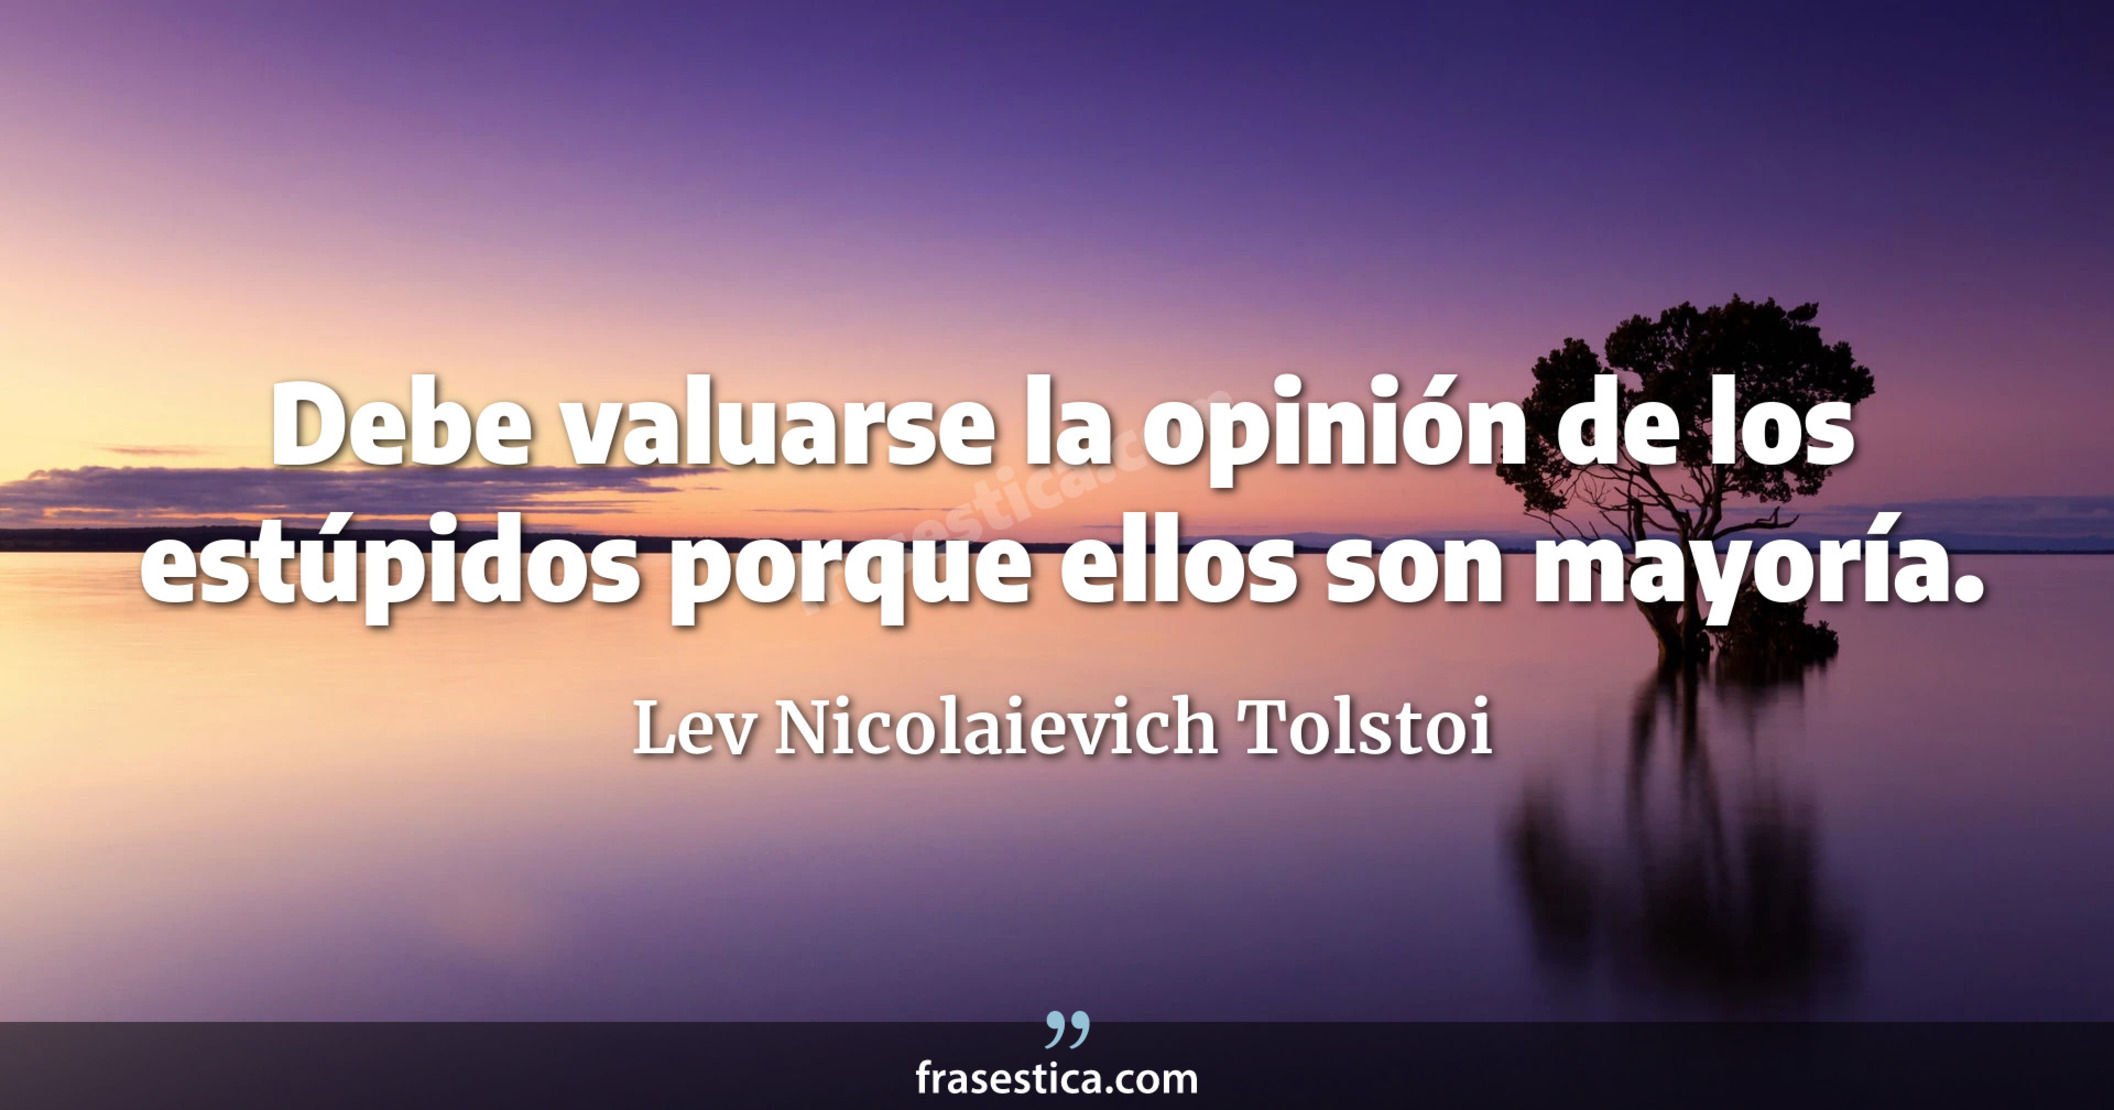 Debe valuarse la opinión de los estúpidos porque ellos son mayoría. - Lev Nicolaievich Tolstoi